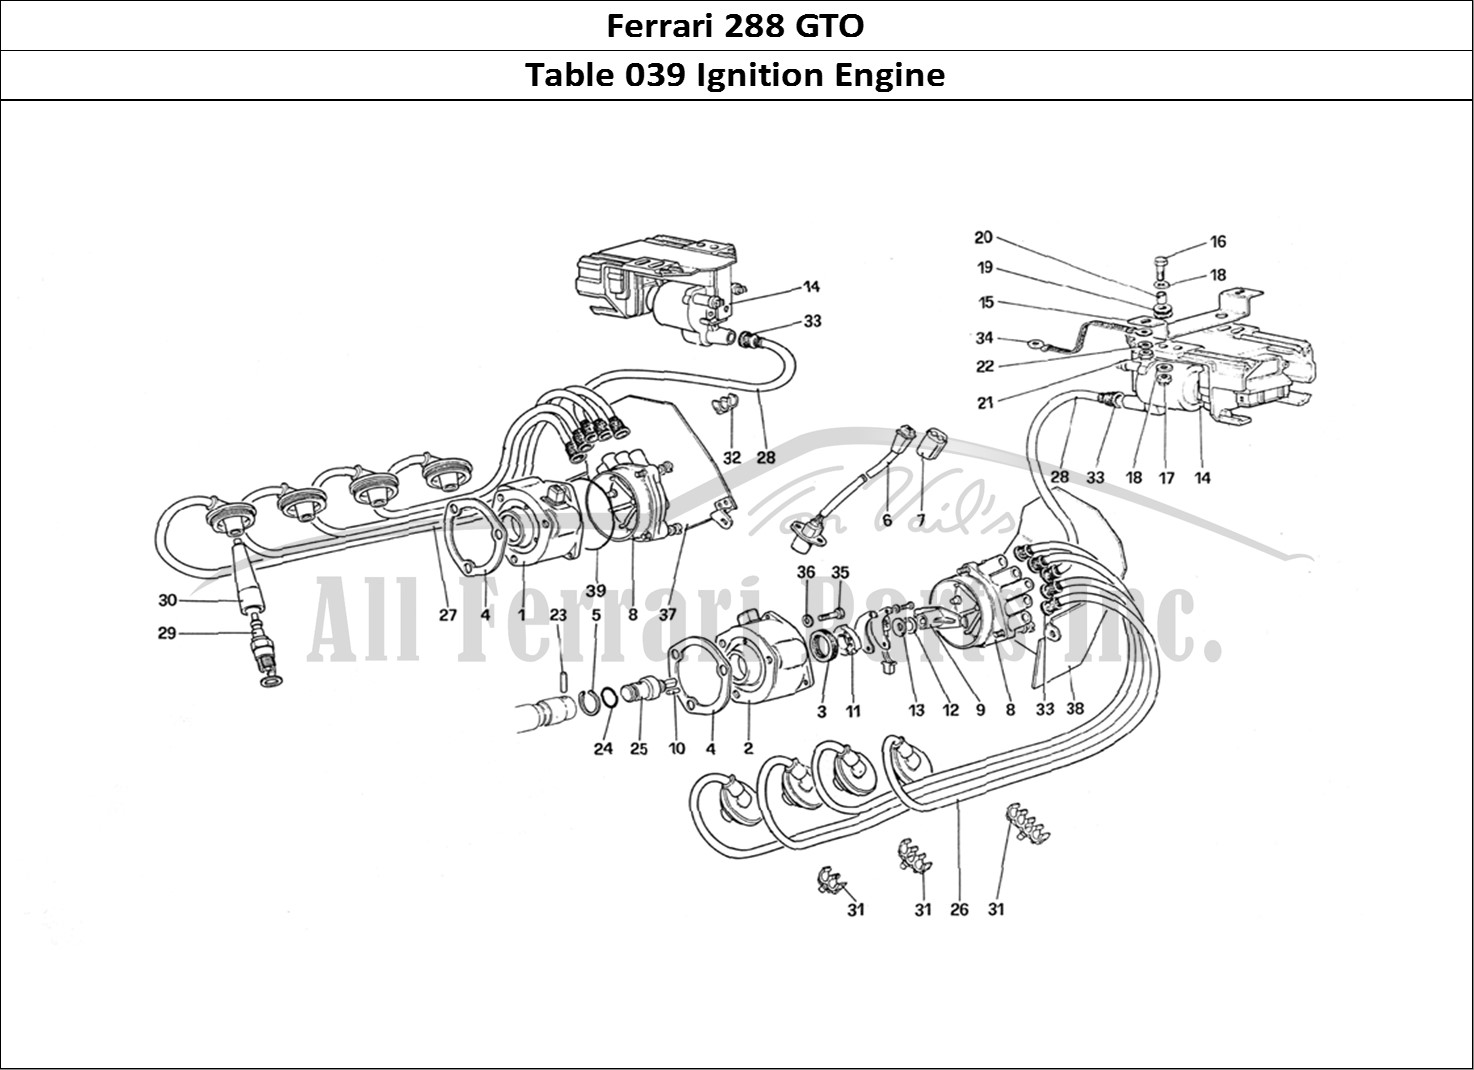 Ferrari Parts Ferrari 288 GTO Page 039 Engine Ignition